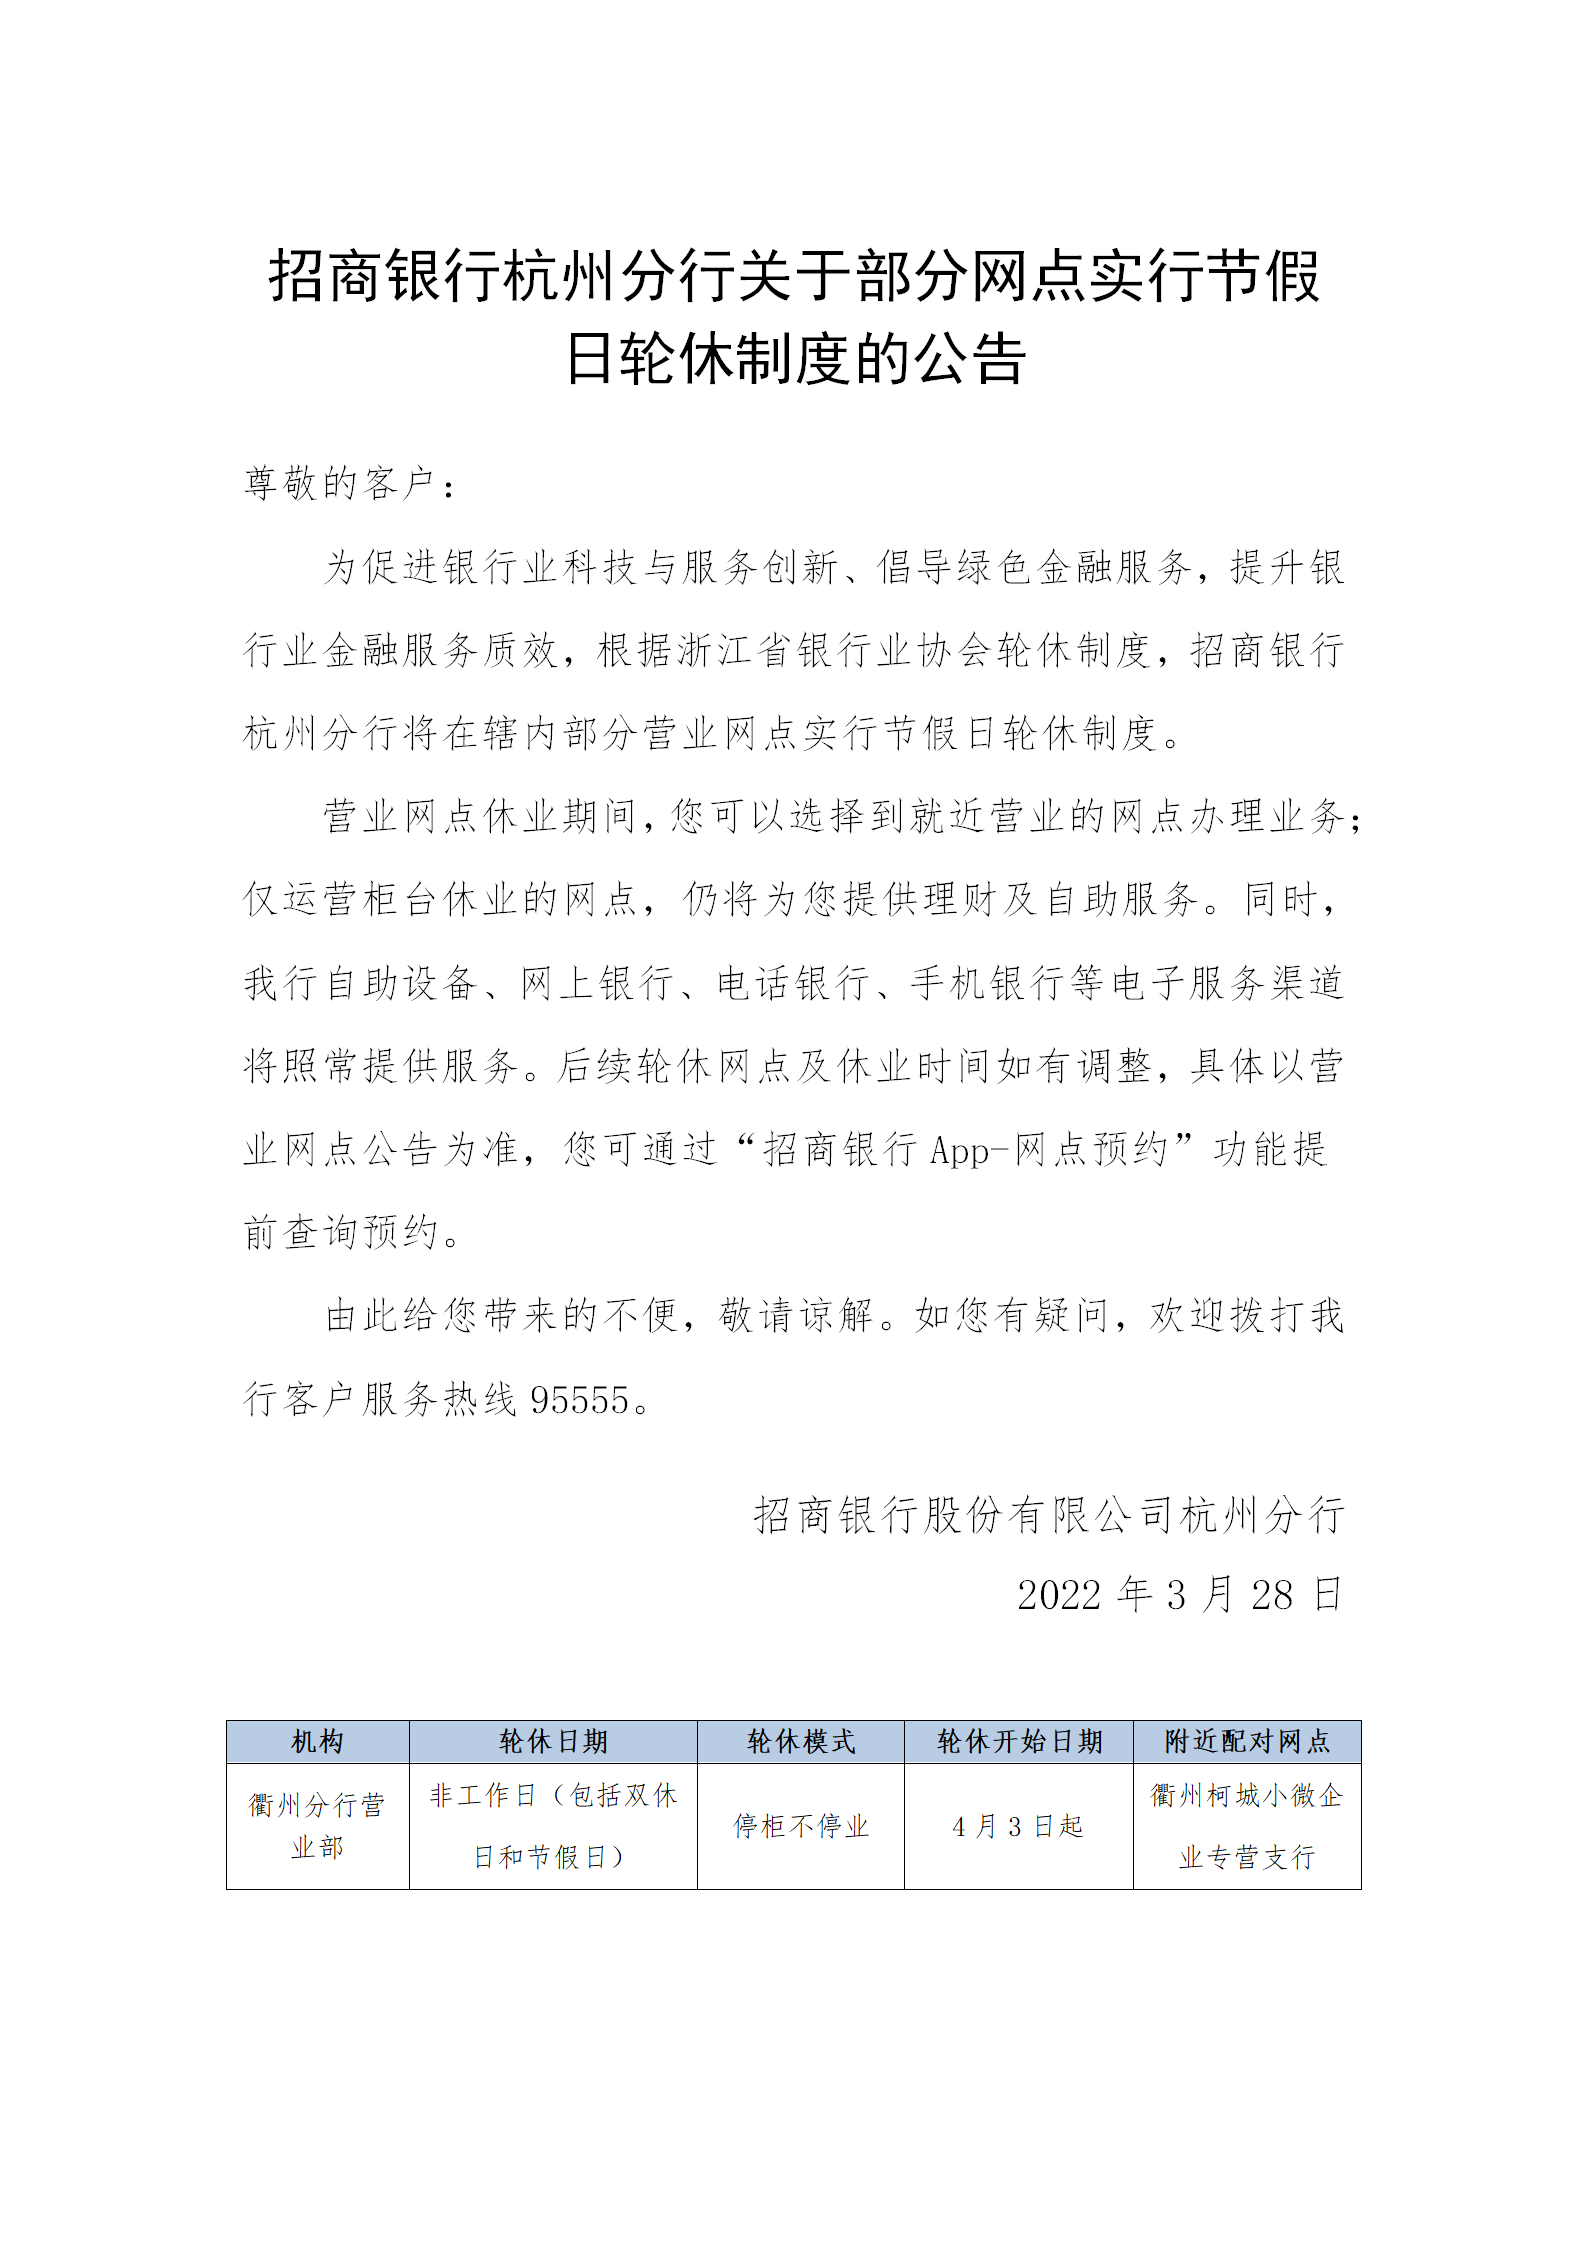 招商银行杭州分行关于部分网点实行节假日轮休制度的公告_01.png